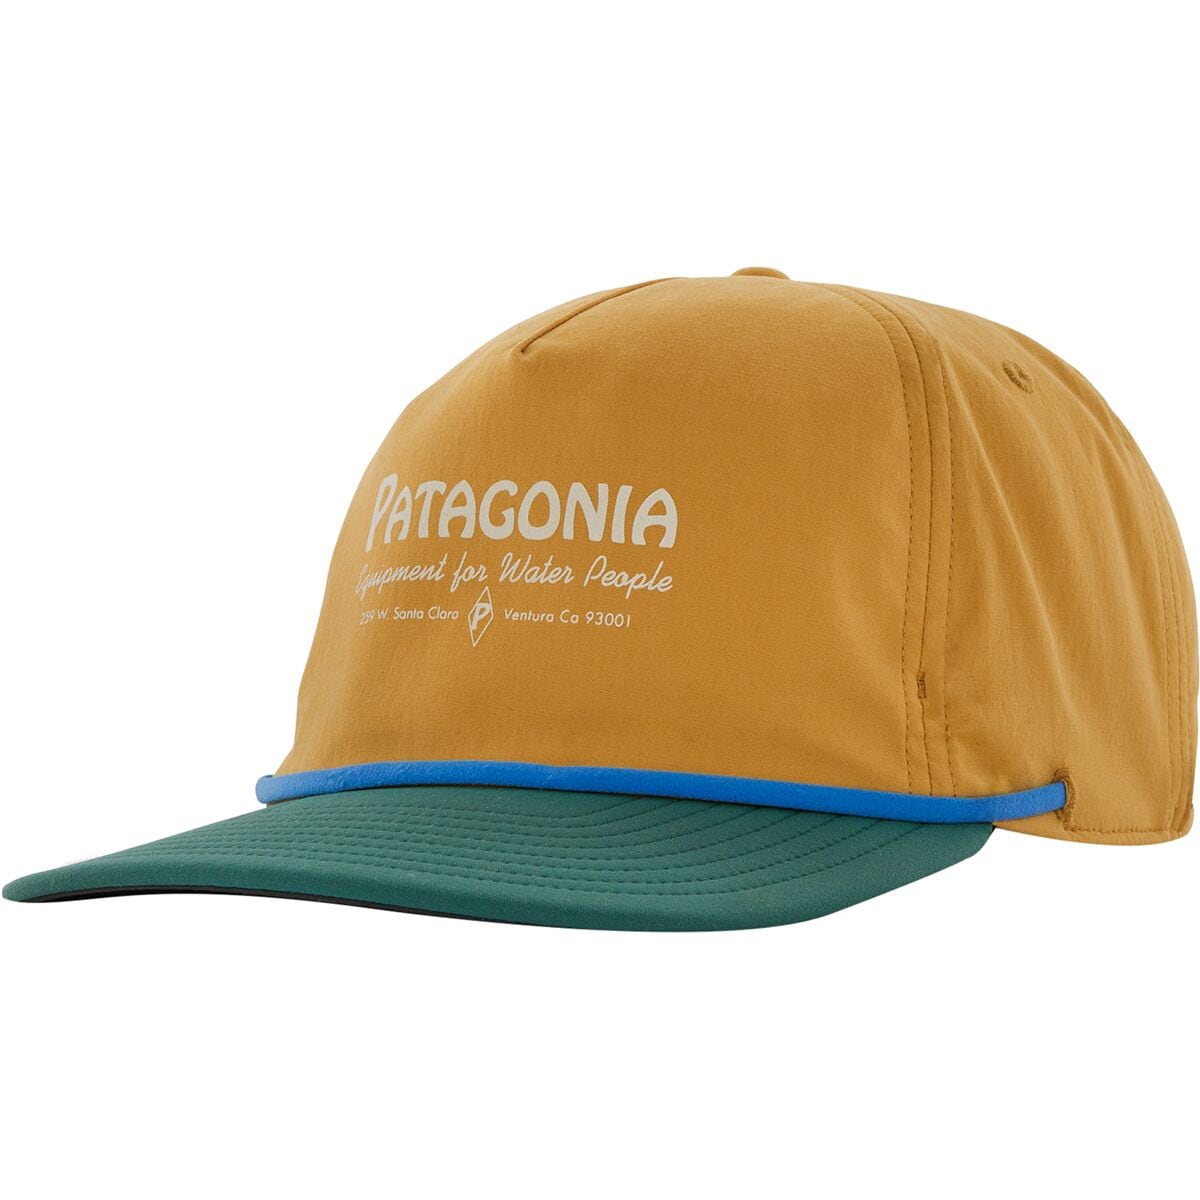 Шляпа крохаля Patagonia, синий